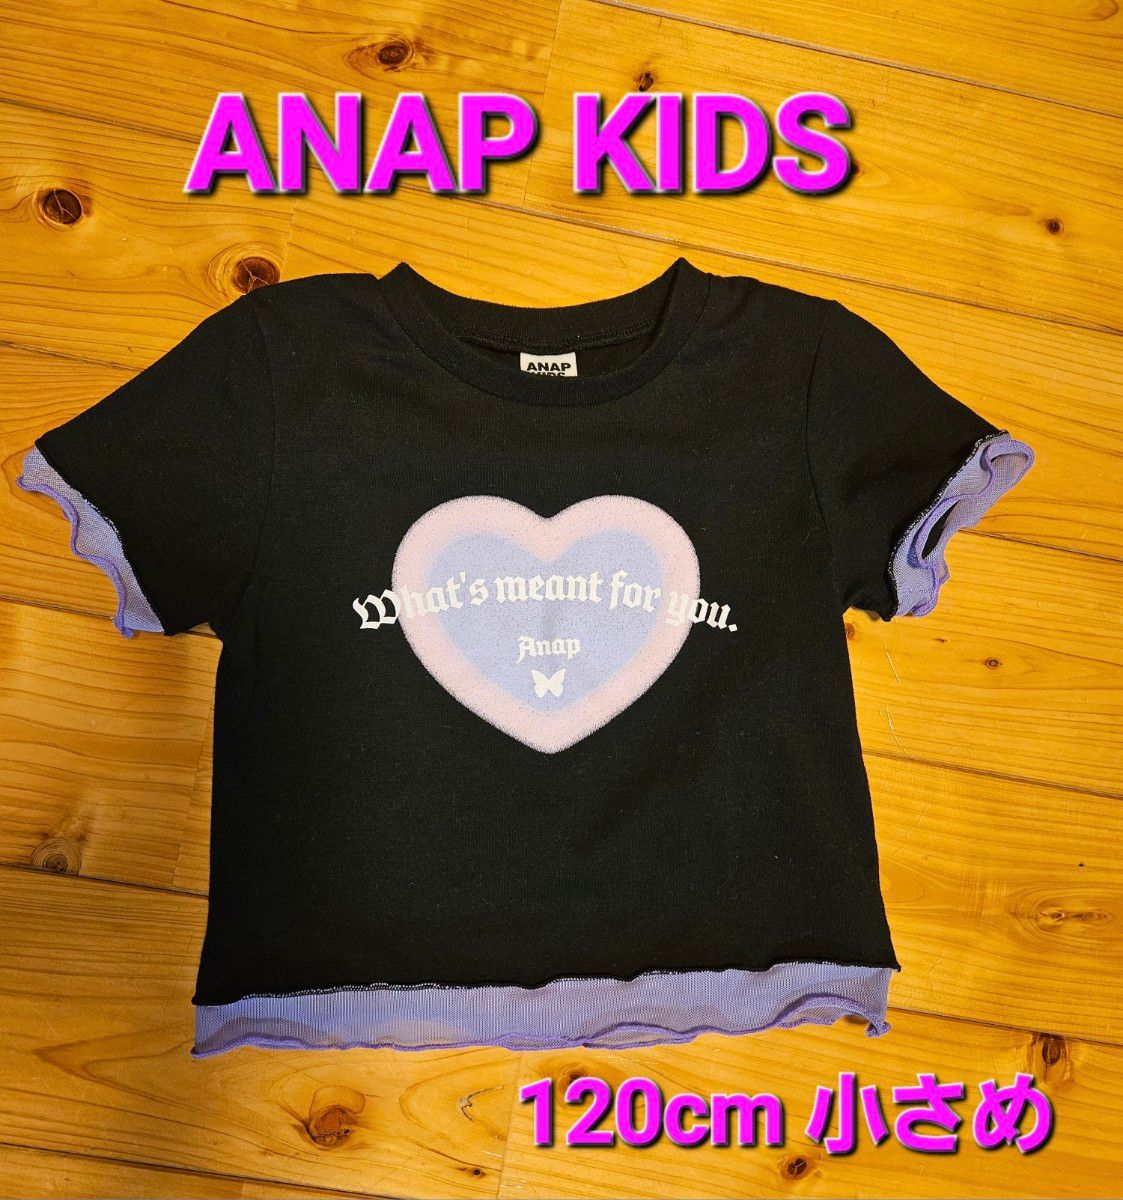 ANAP KIDS アナップキッズ ショート丈 Tシャツ 120cm小さめ 黒 紫